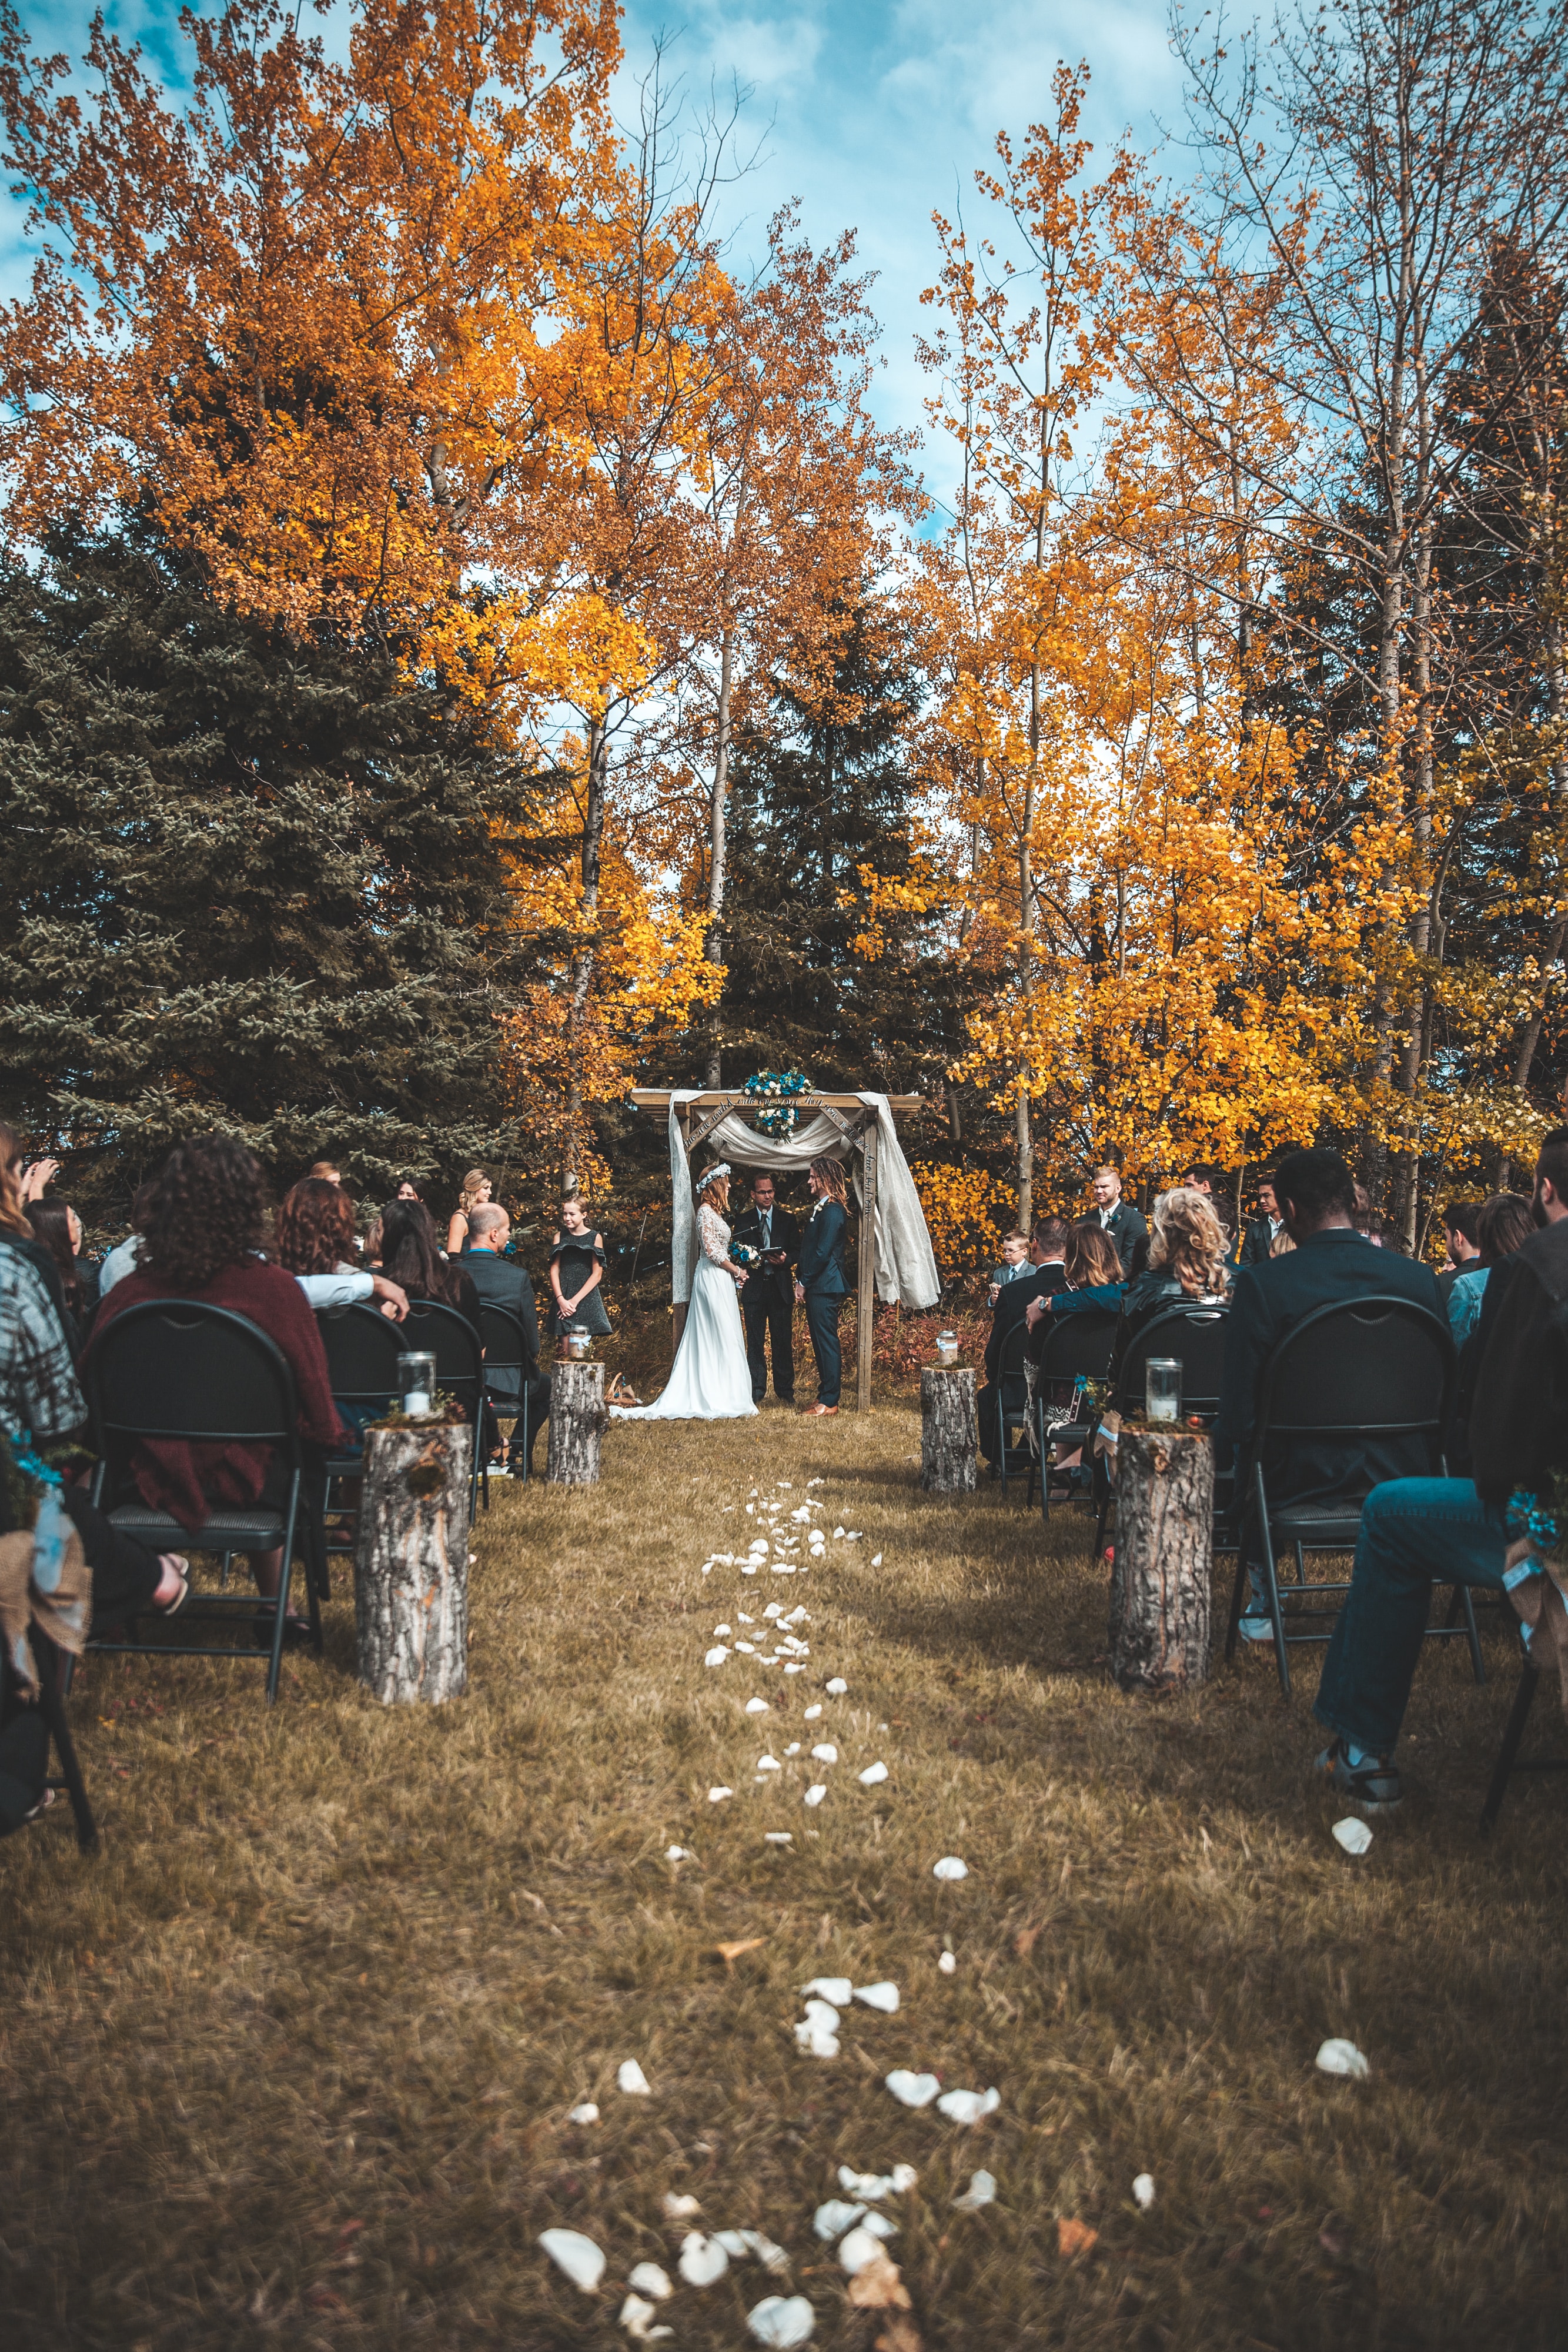 Eine Hochzeitszeremonie im Herbst mit Bäumen im Hintergrund.